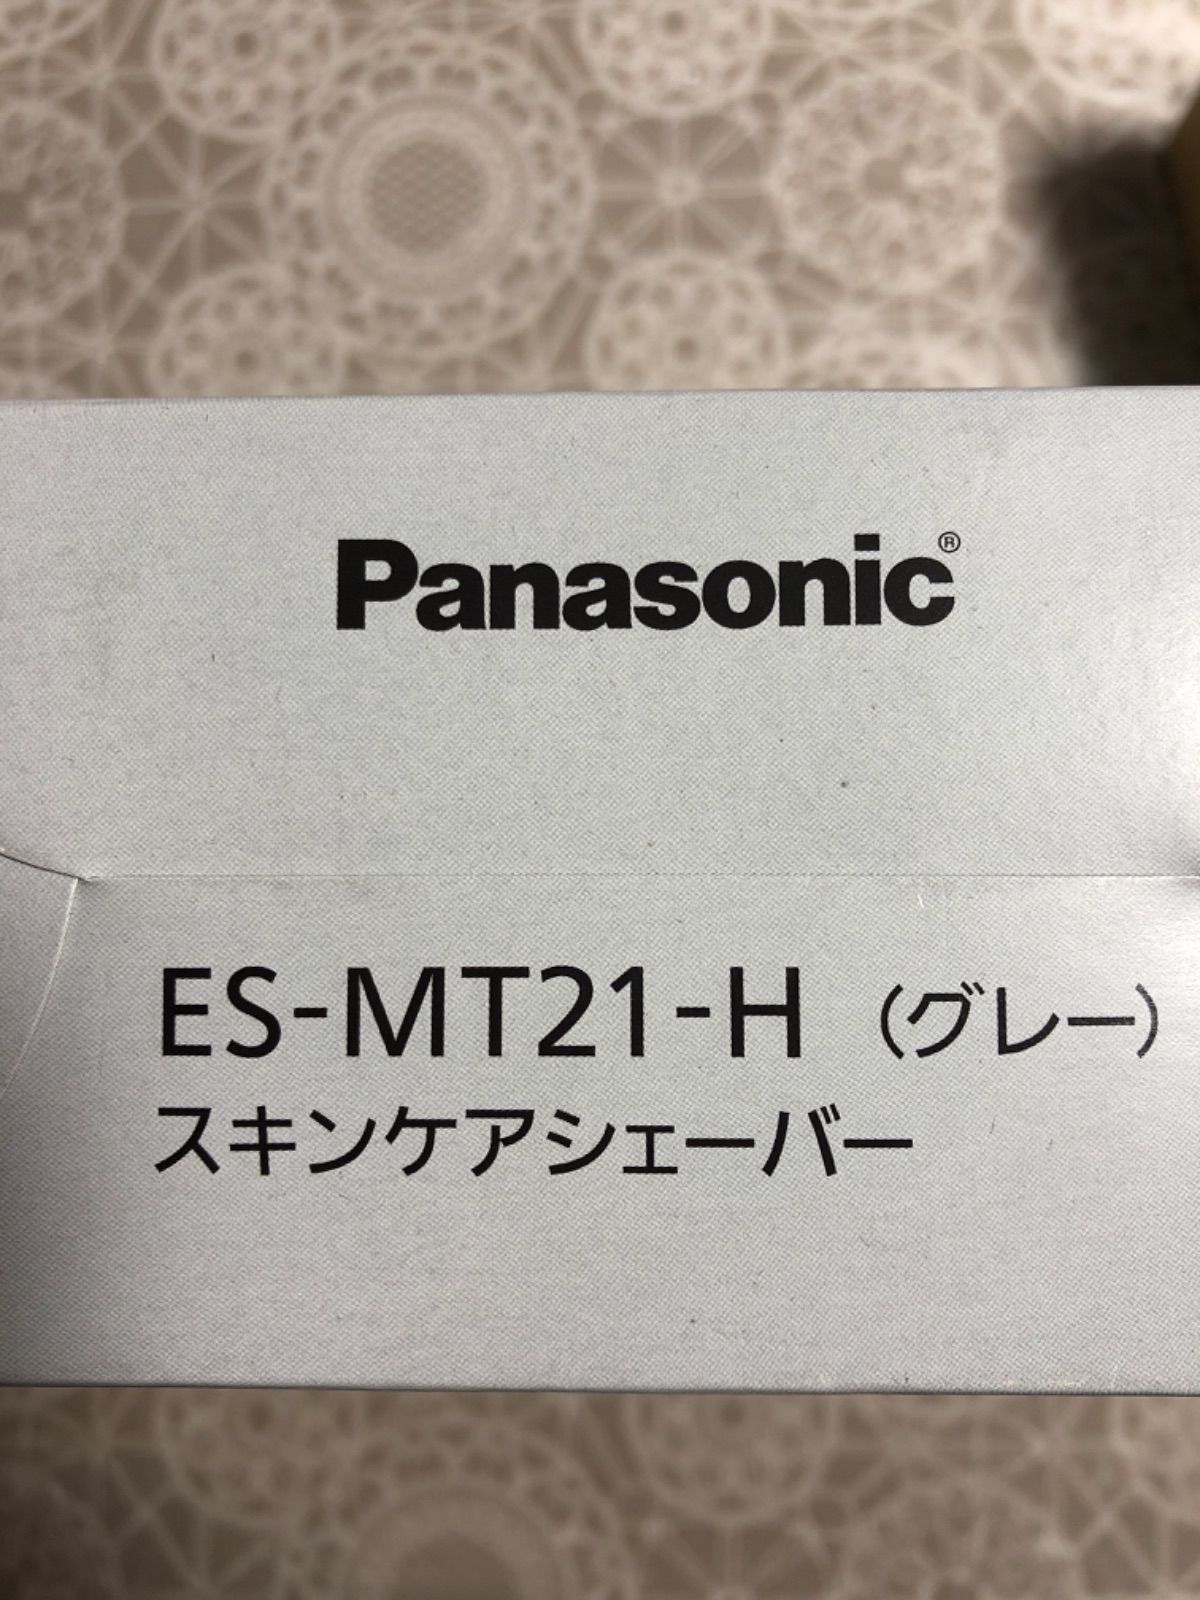 グランドセール 【お値下げ】Panasonic ES-MT21-H GRAY - 美容家電